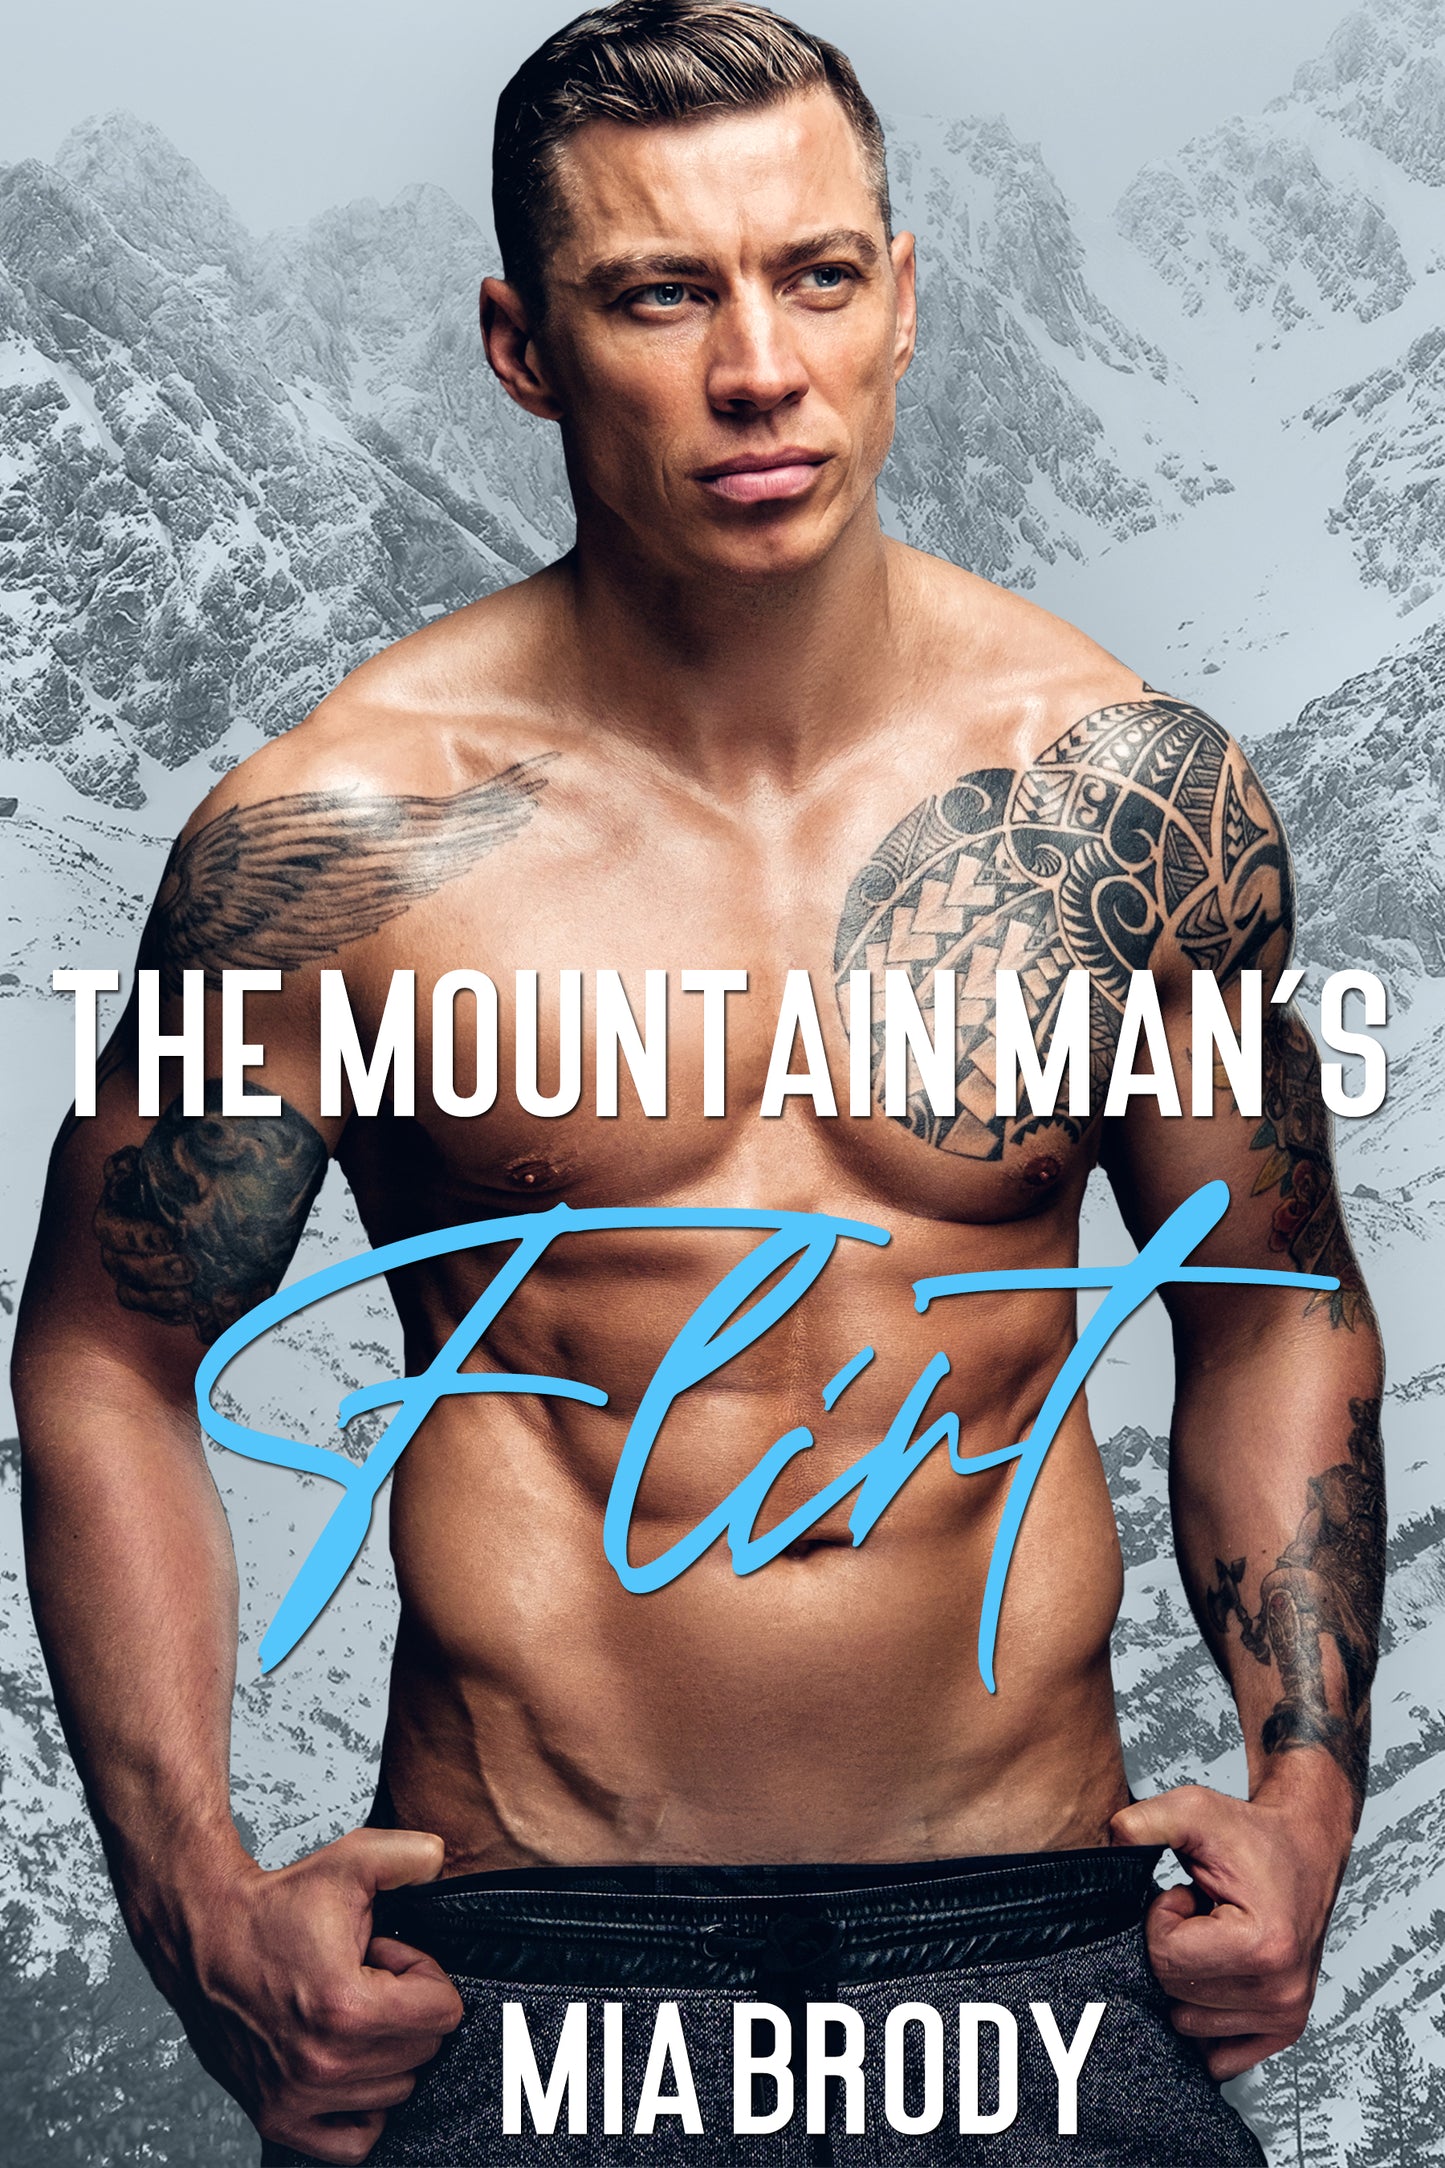 The Mountain Man's Flirt